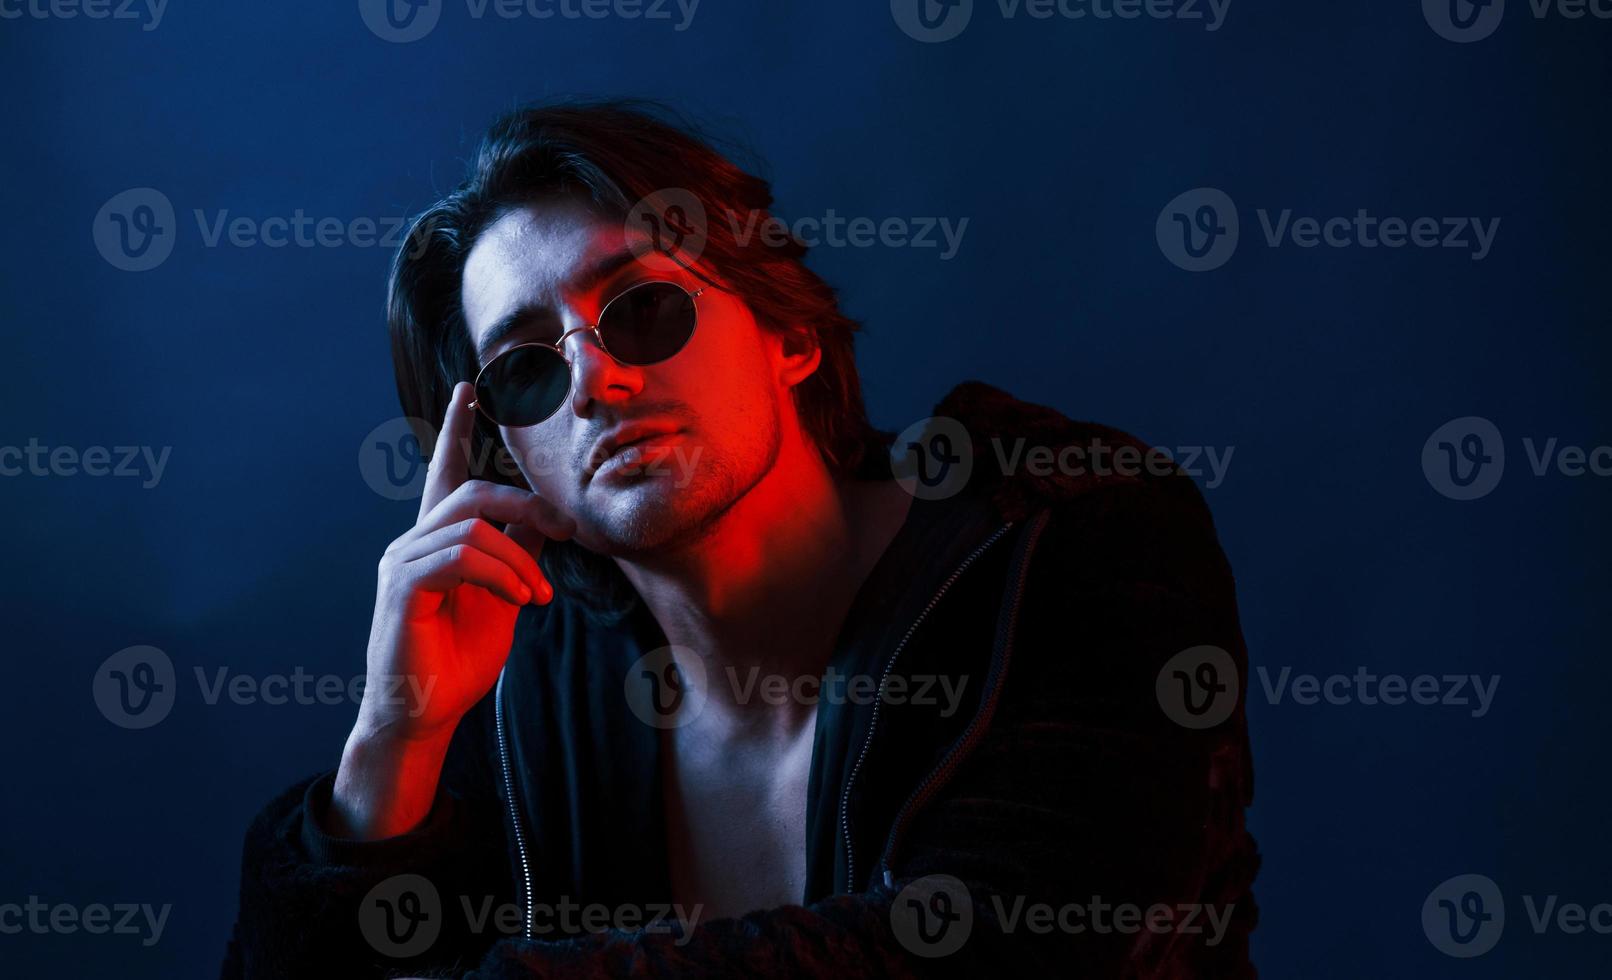 homem bonito de óculos e roupas pretas está no estúdio com iluminação neon azul foto